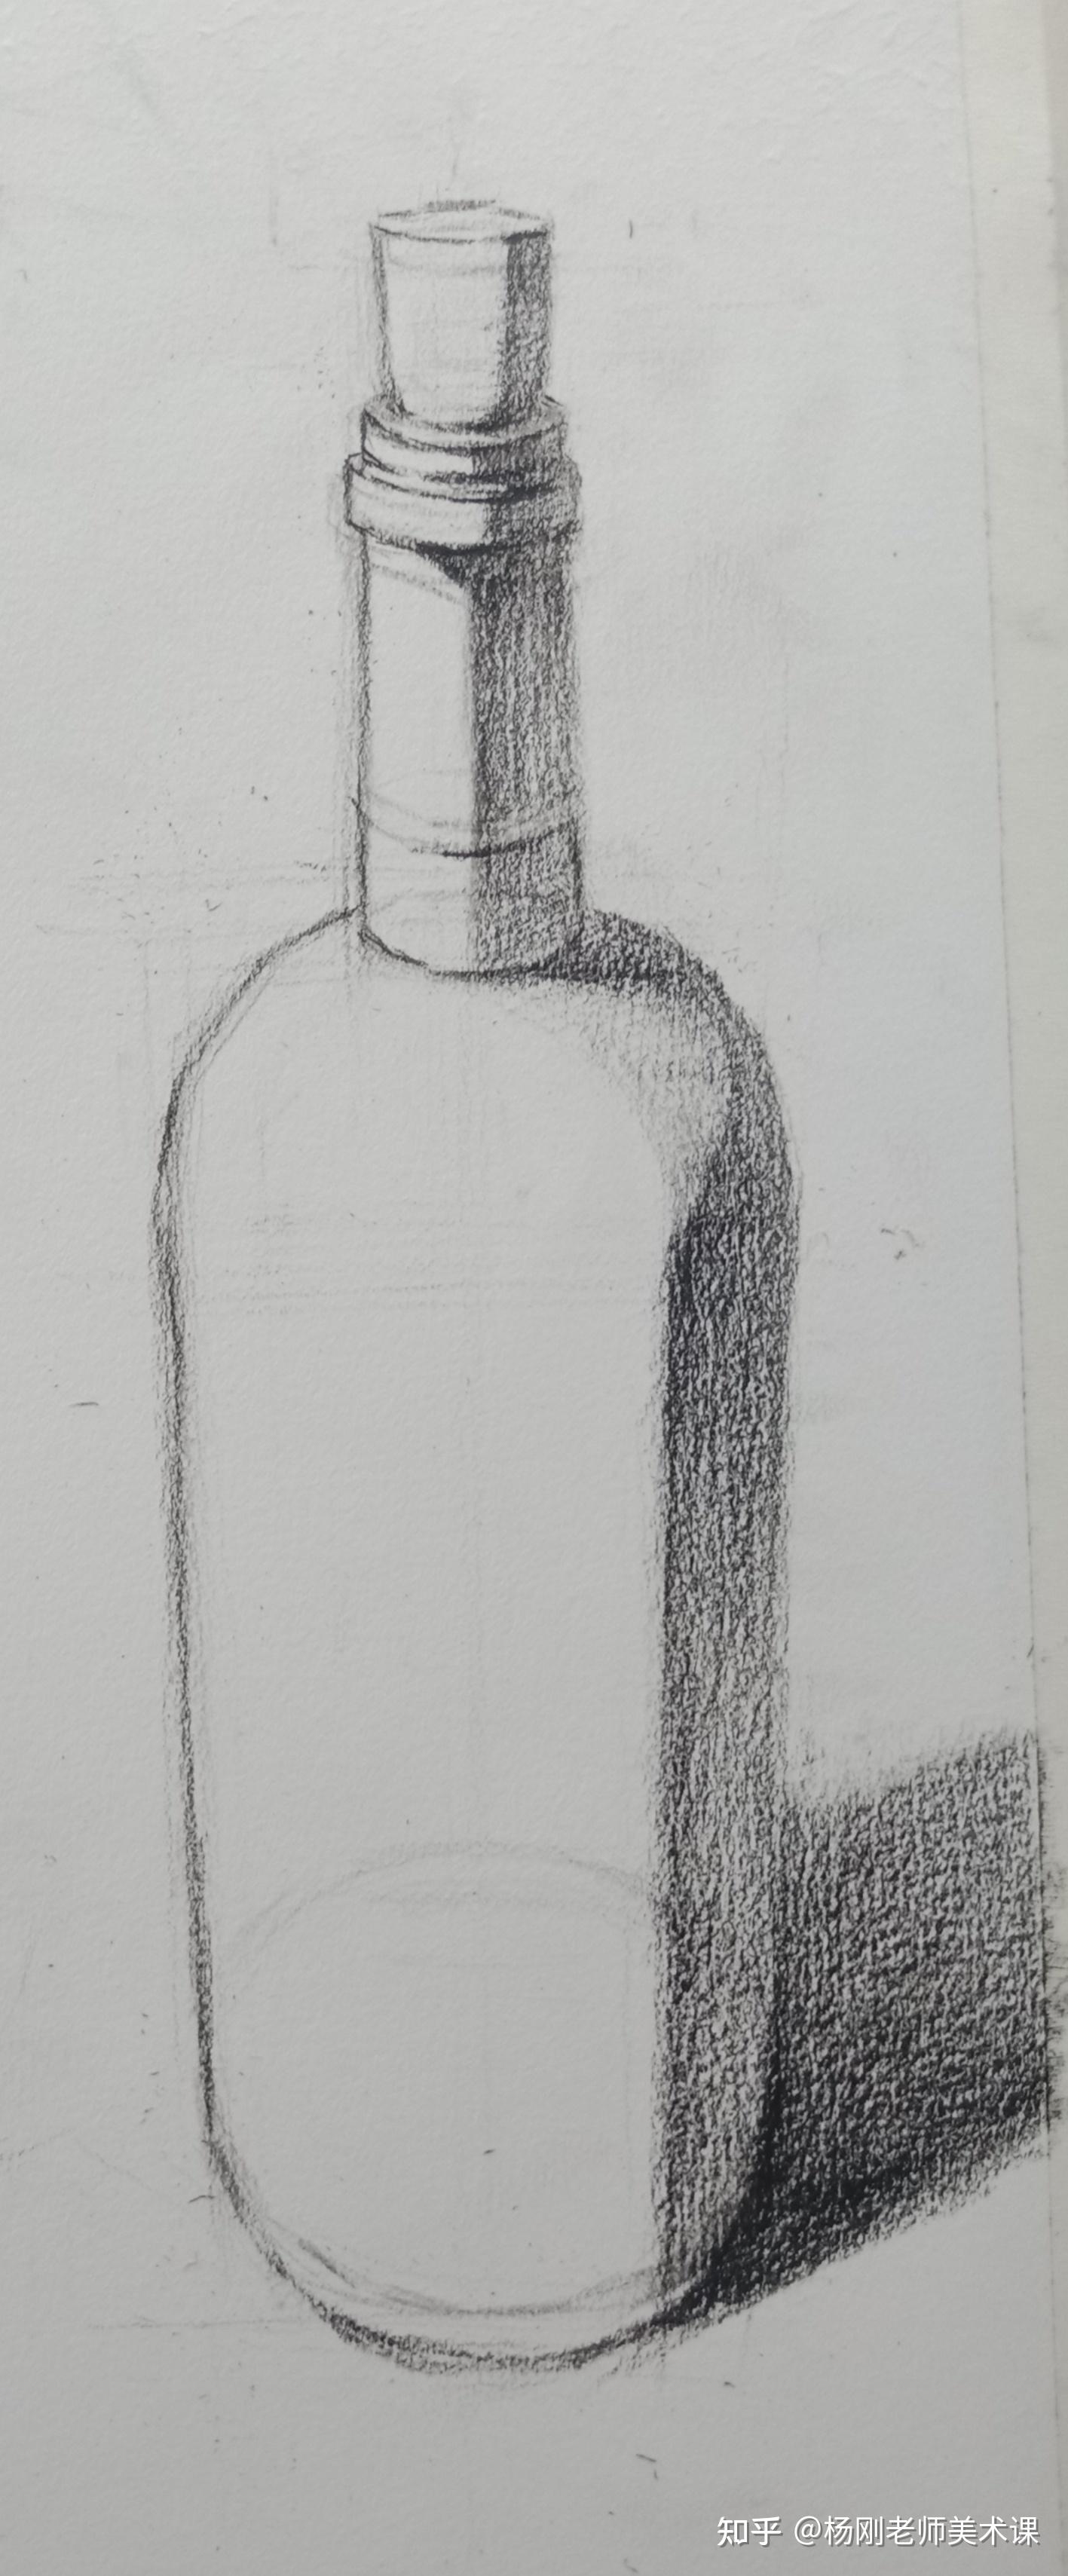 素描红酒瓶画法